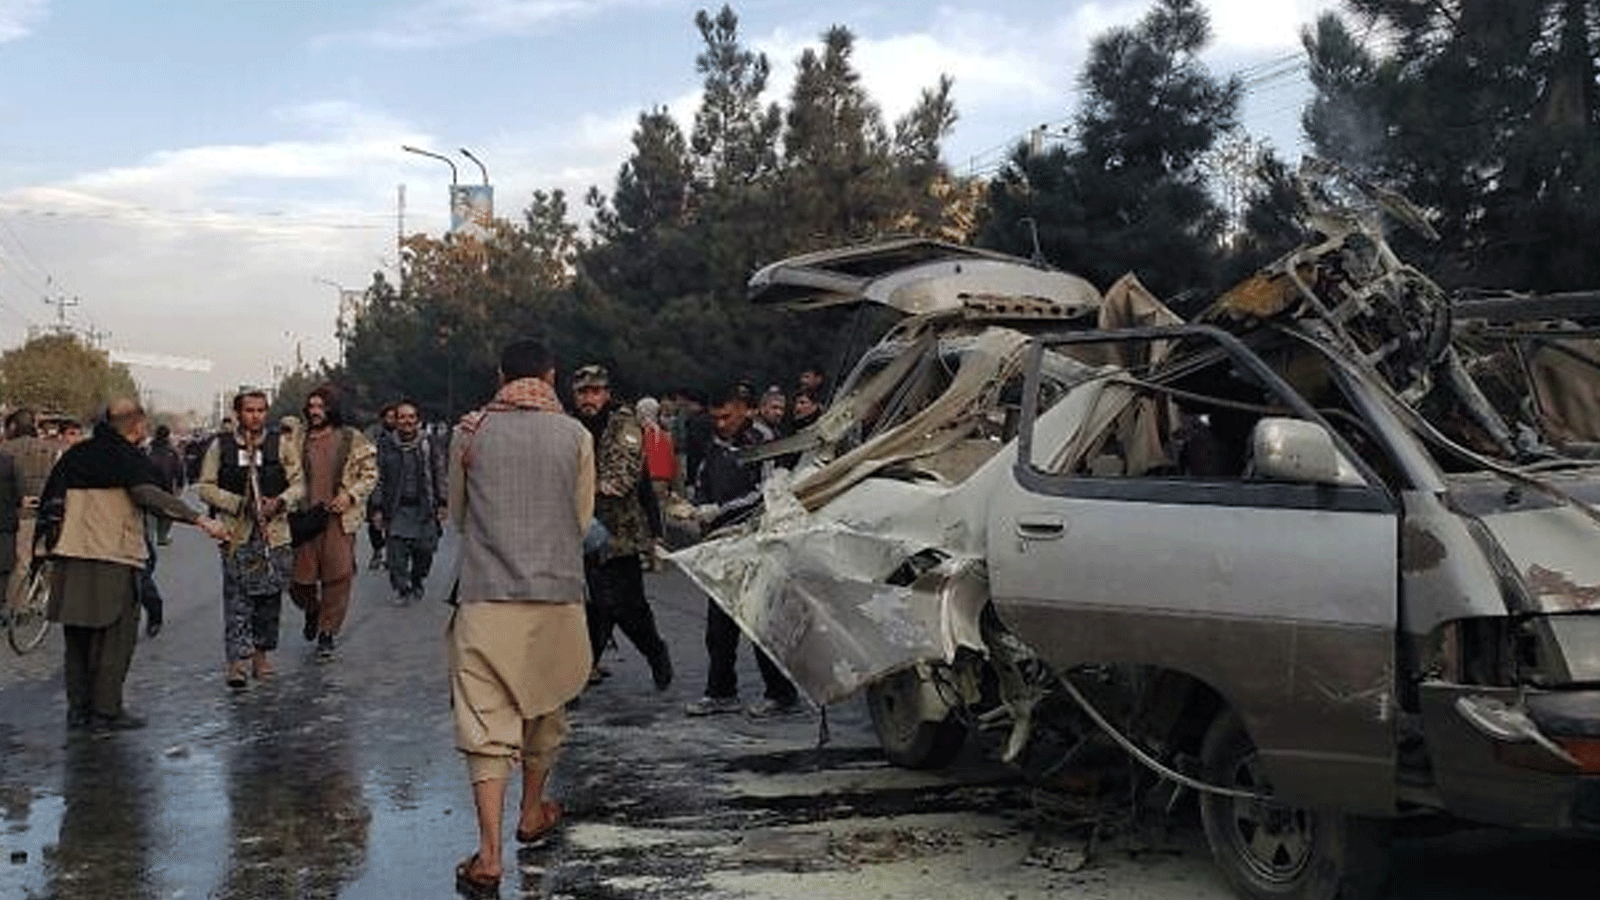 سكان يتجمعون بجوار حافلة صغيرة مدمرة بعد انفجار قنبلة أسفر عن مقتل شخصين وإصابة خمسة آخرين في كابول، في 17 تشرين الثاني\ نوفمبر 2021.